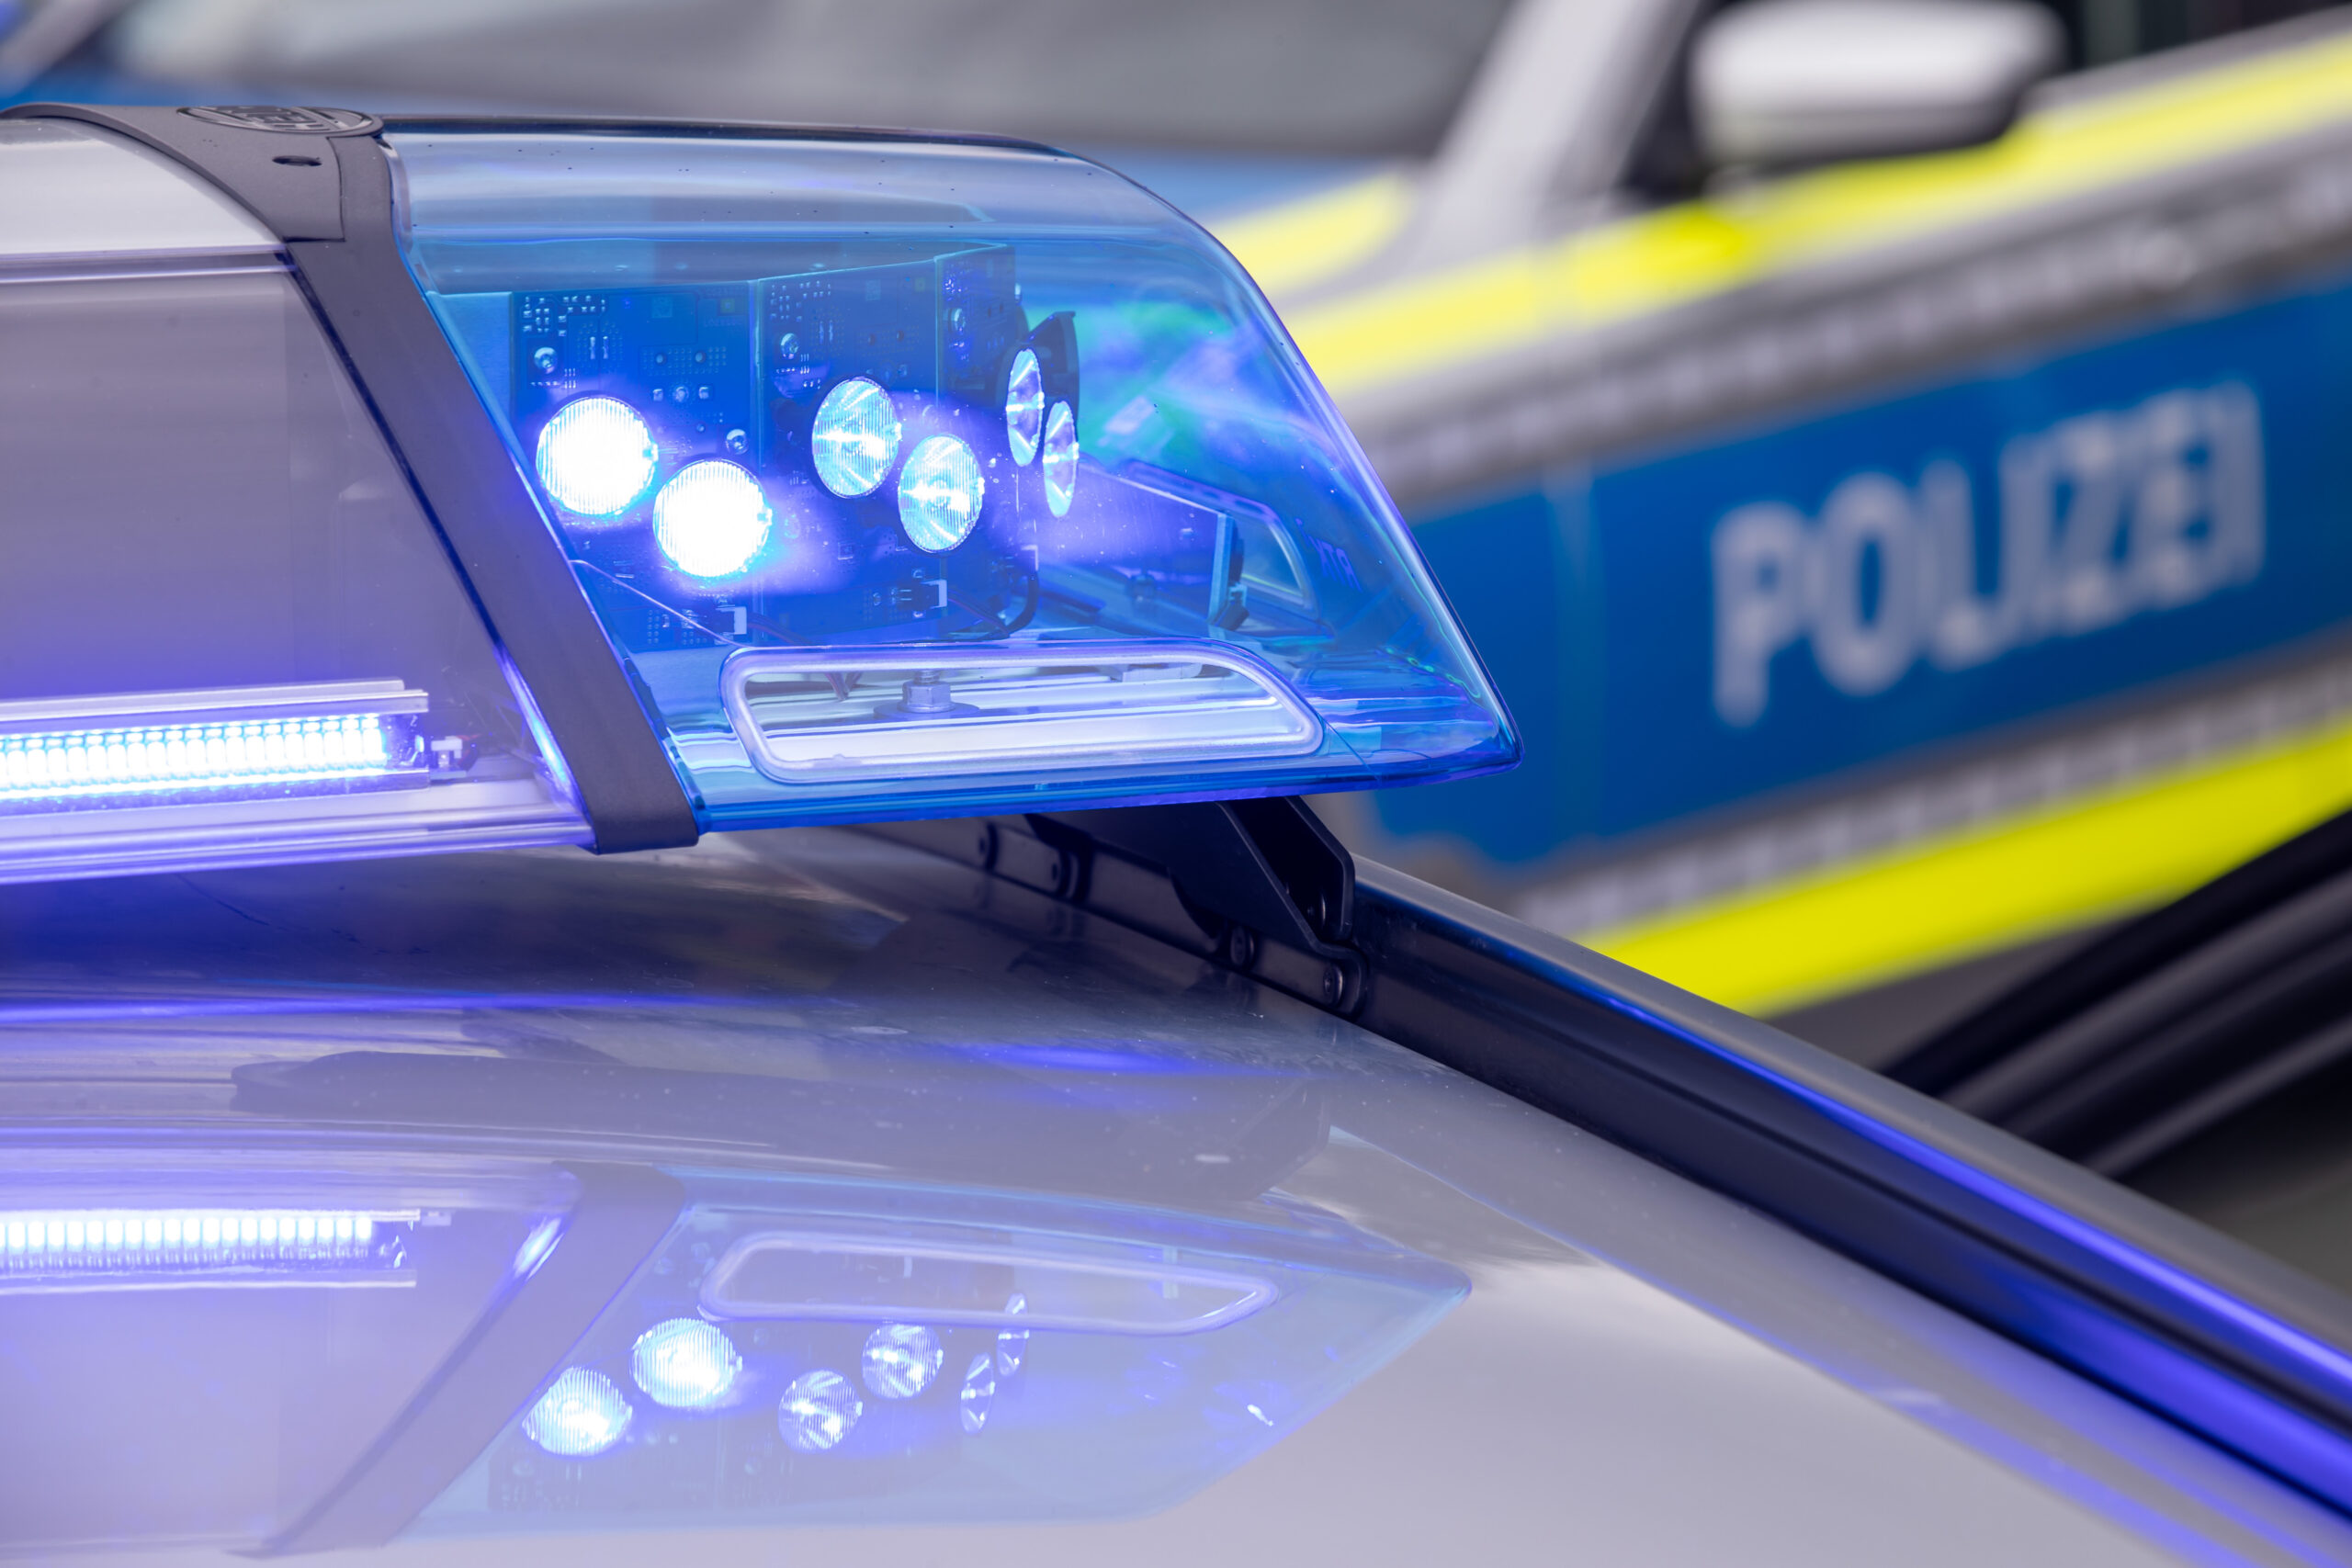 Mann in Wilhelmsburger Inselpark überfallen und ausgeraubt. Polizei sucht Hinweise auf Täter.